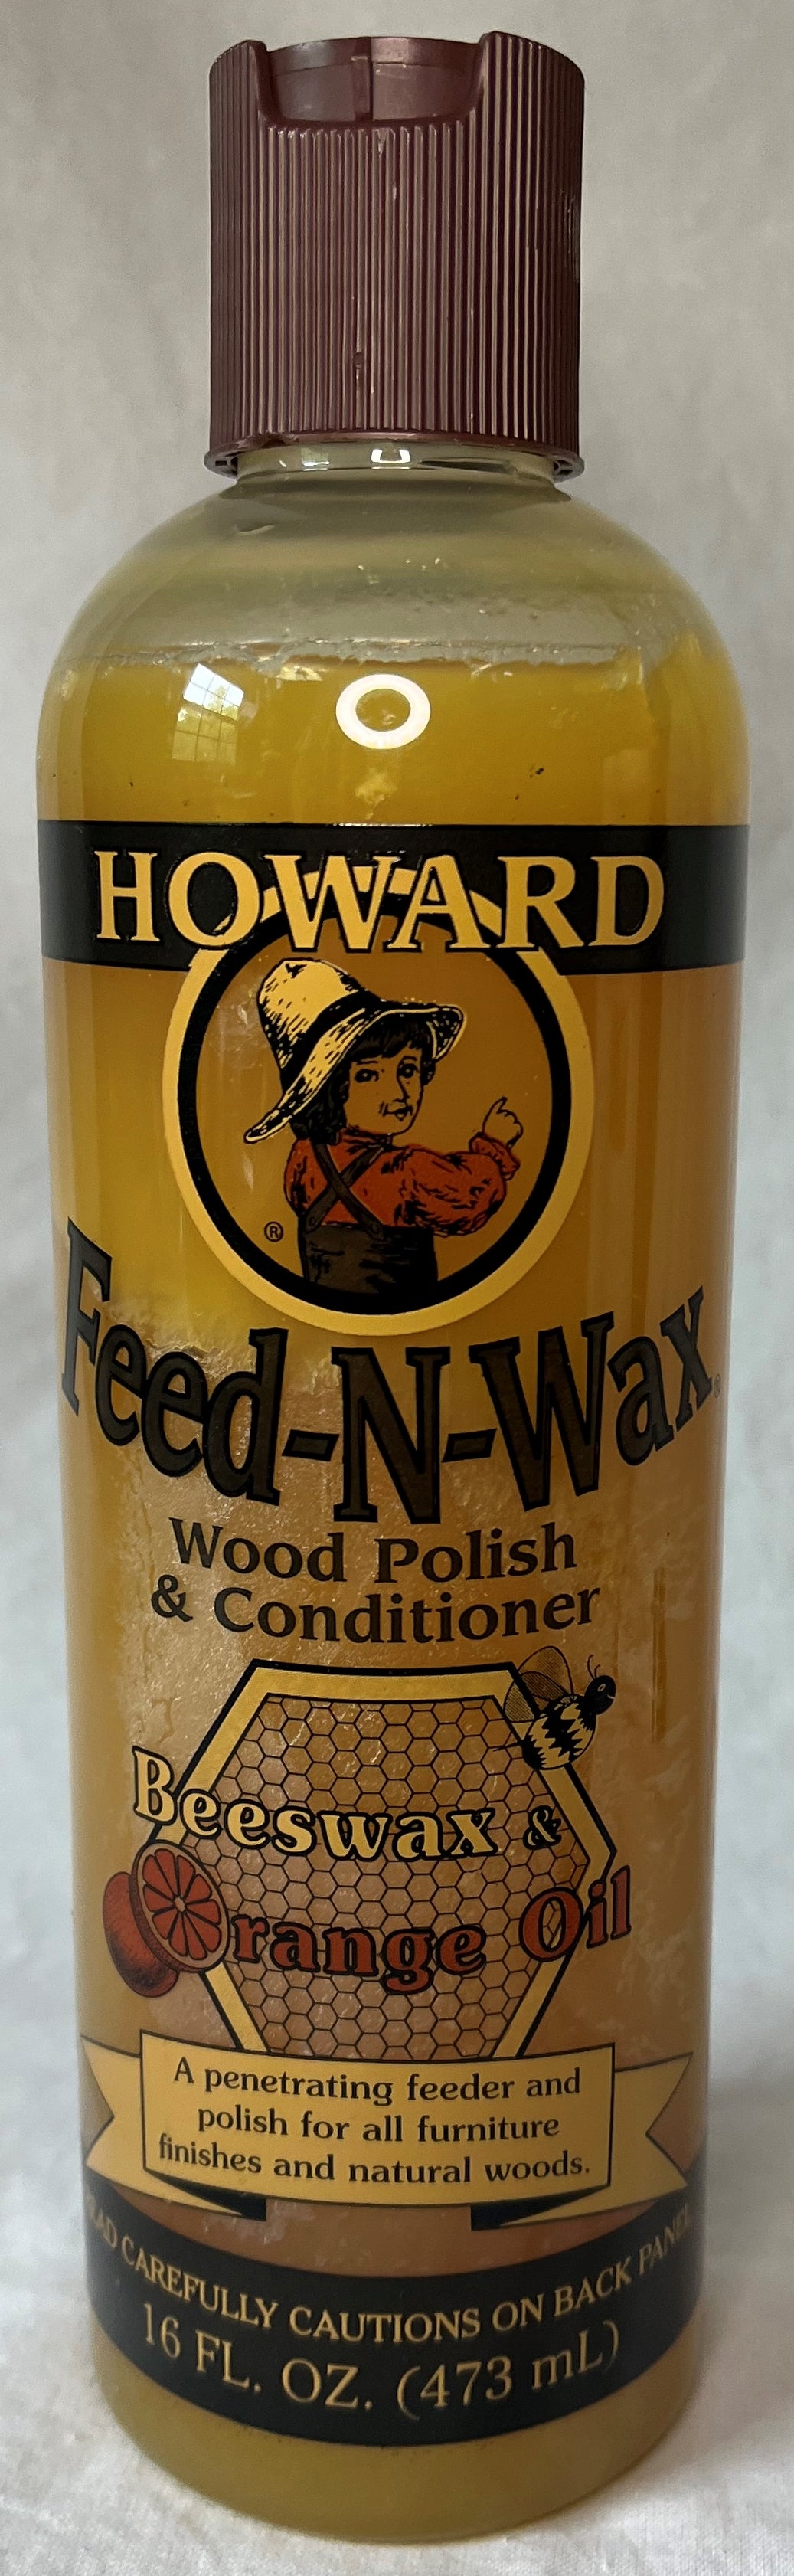 Howard Feed-N-Wax Wood Polish & Conditioner (16oz)